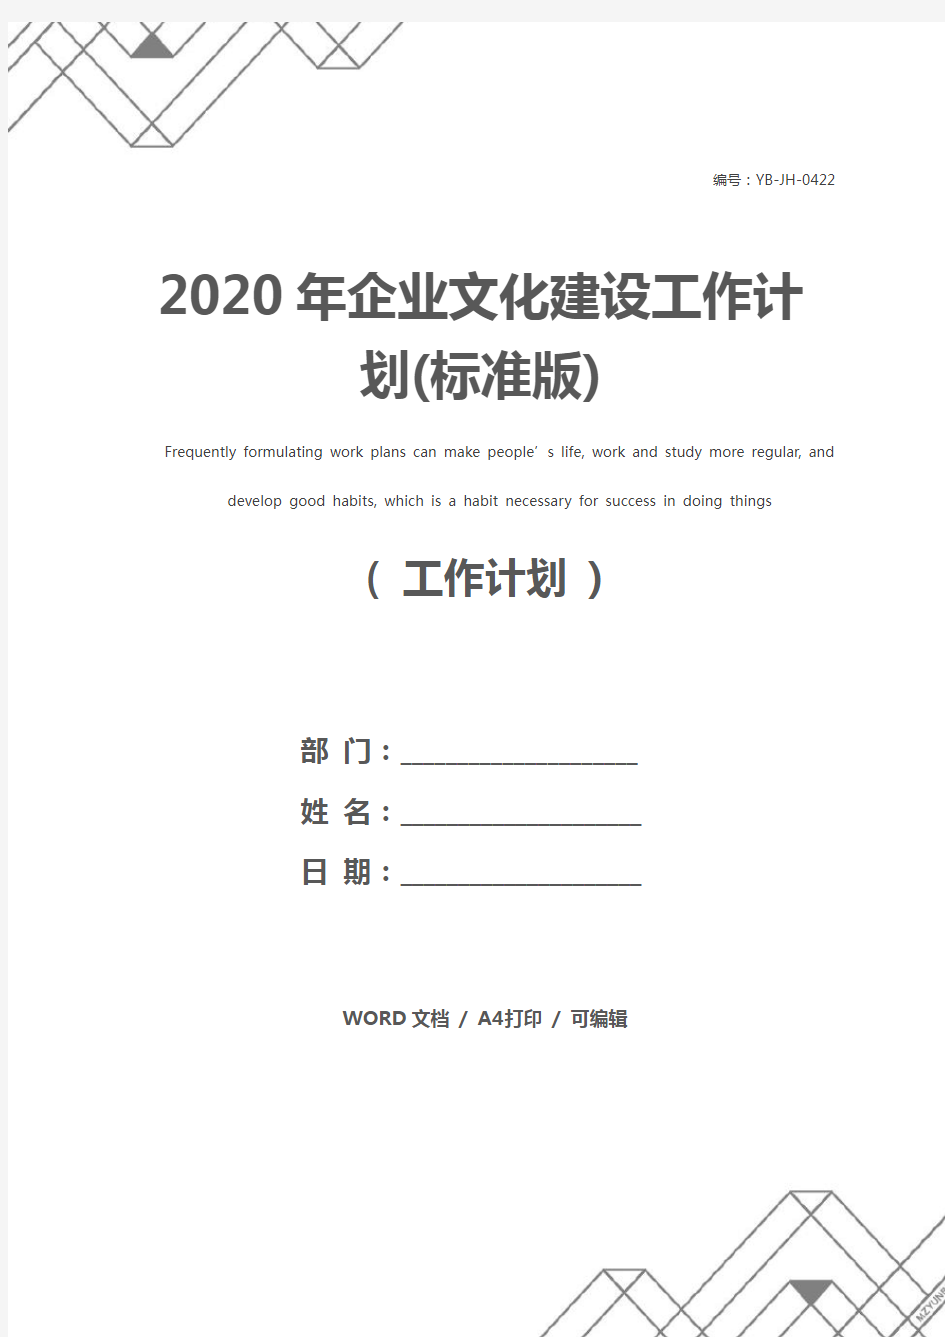 2020年企业文化建设工作计划(标准版)